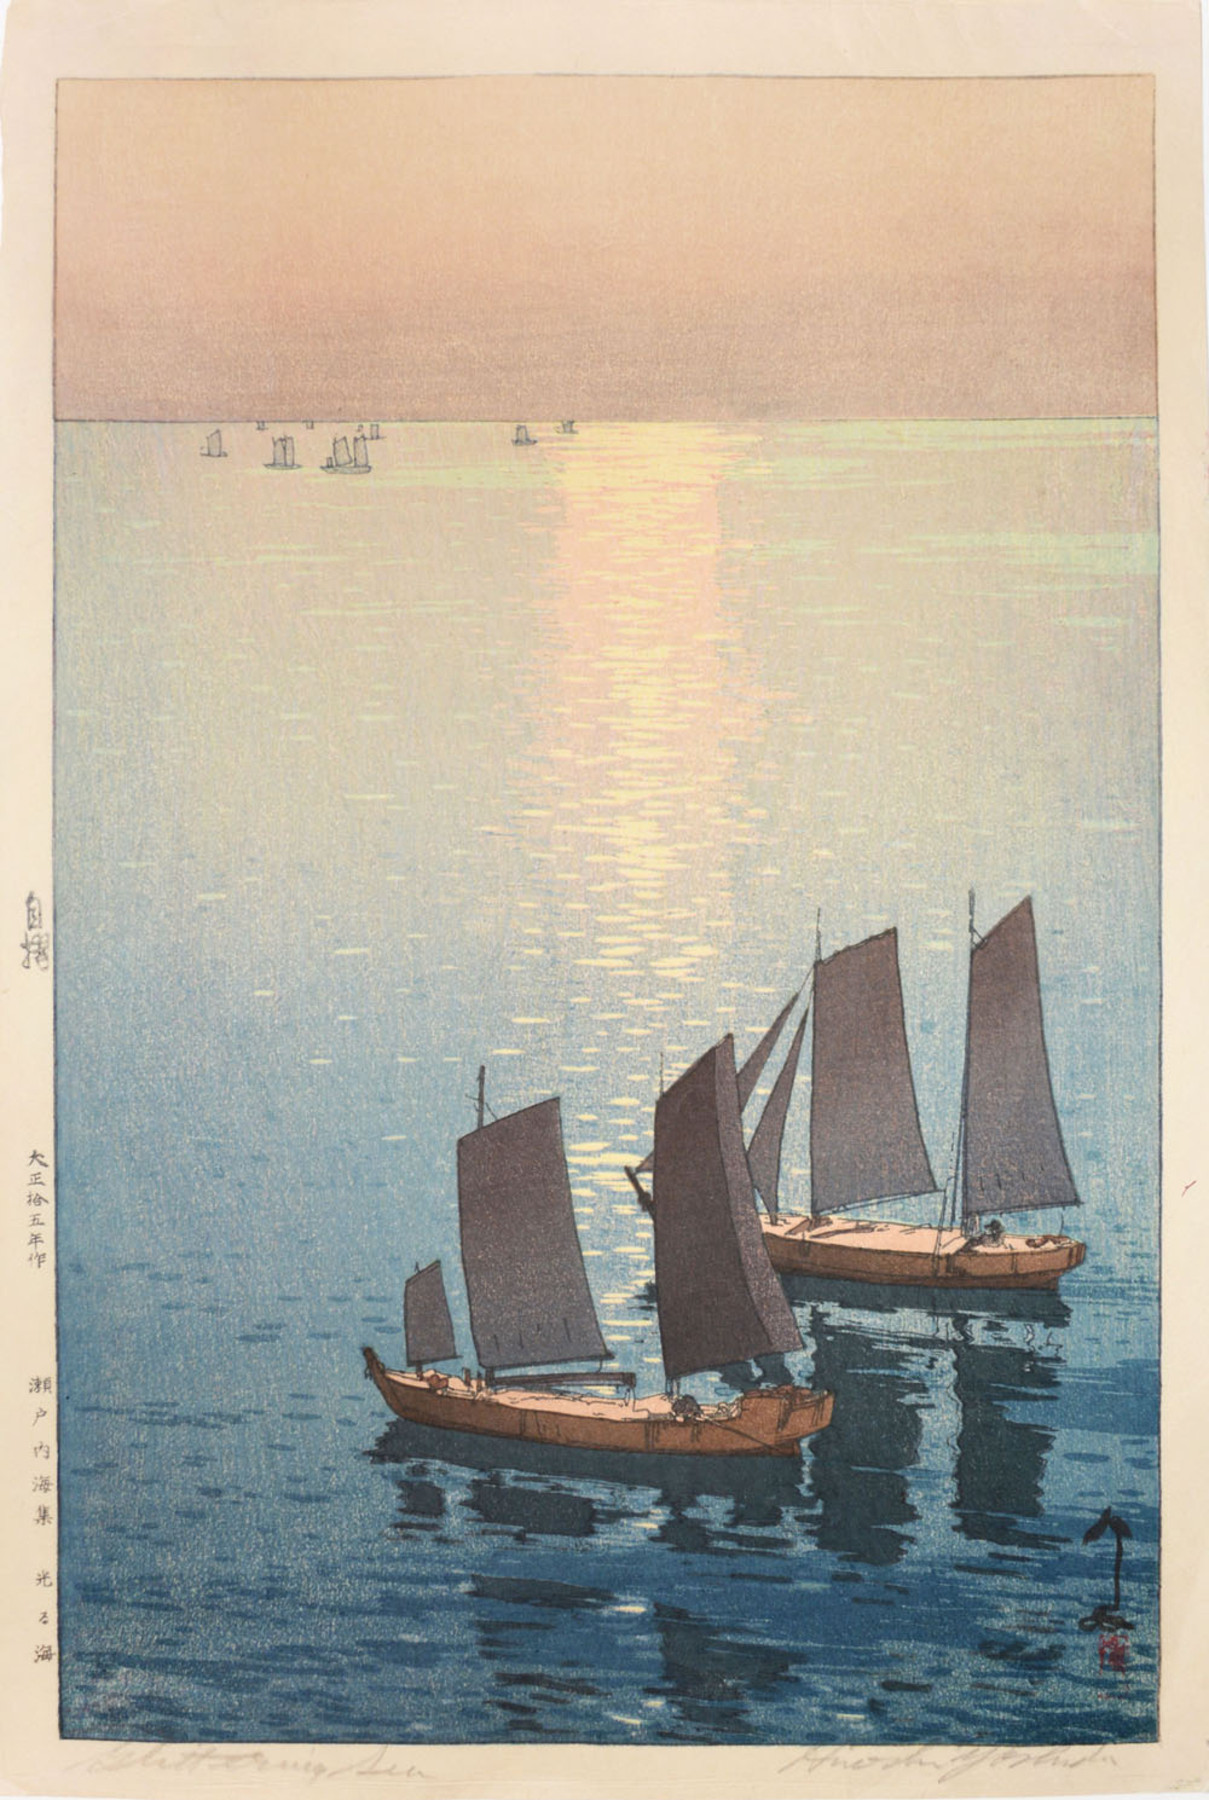 دریای درخشان by Hiroshi Yoshida - 1926 - 25 x 38 cm 